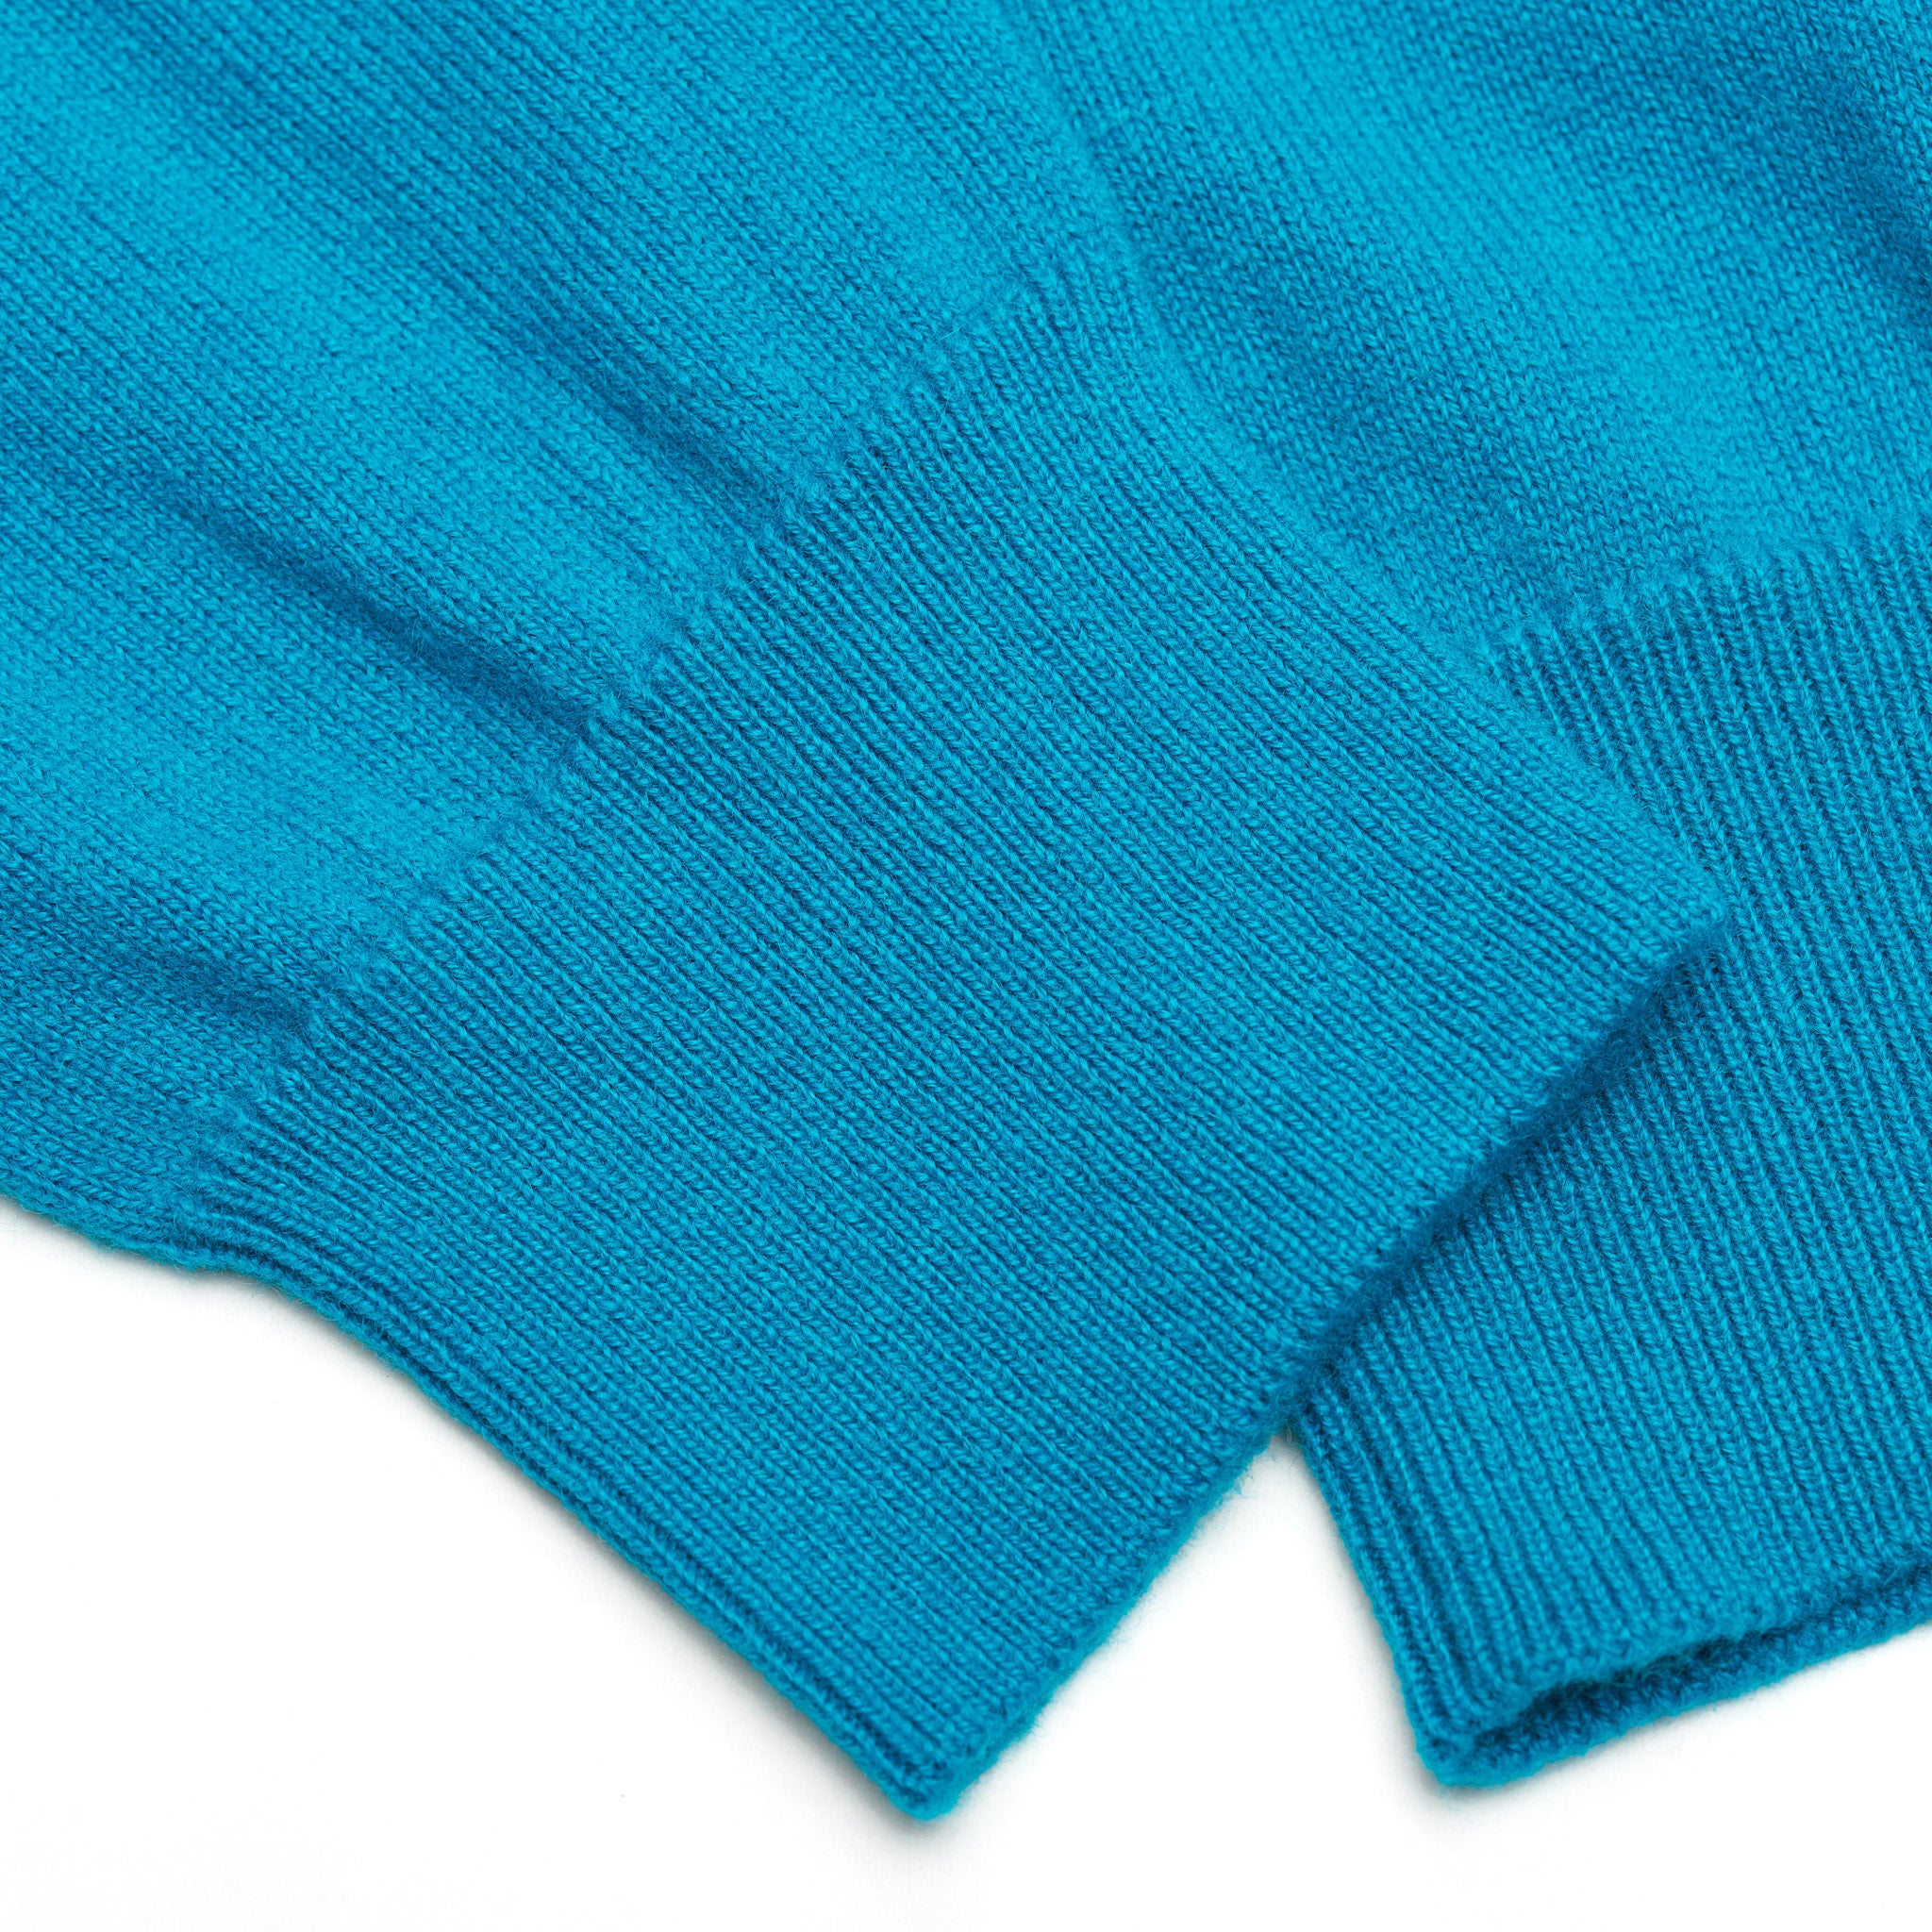 FEDELI Aqua Blue Cashmere V-Neck Sweater NEW